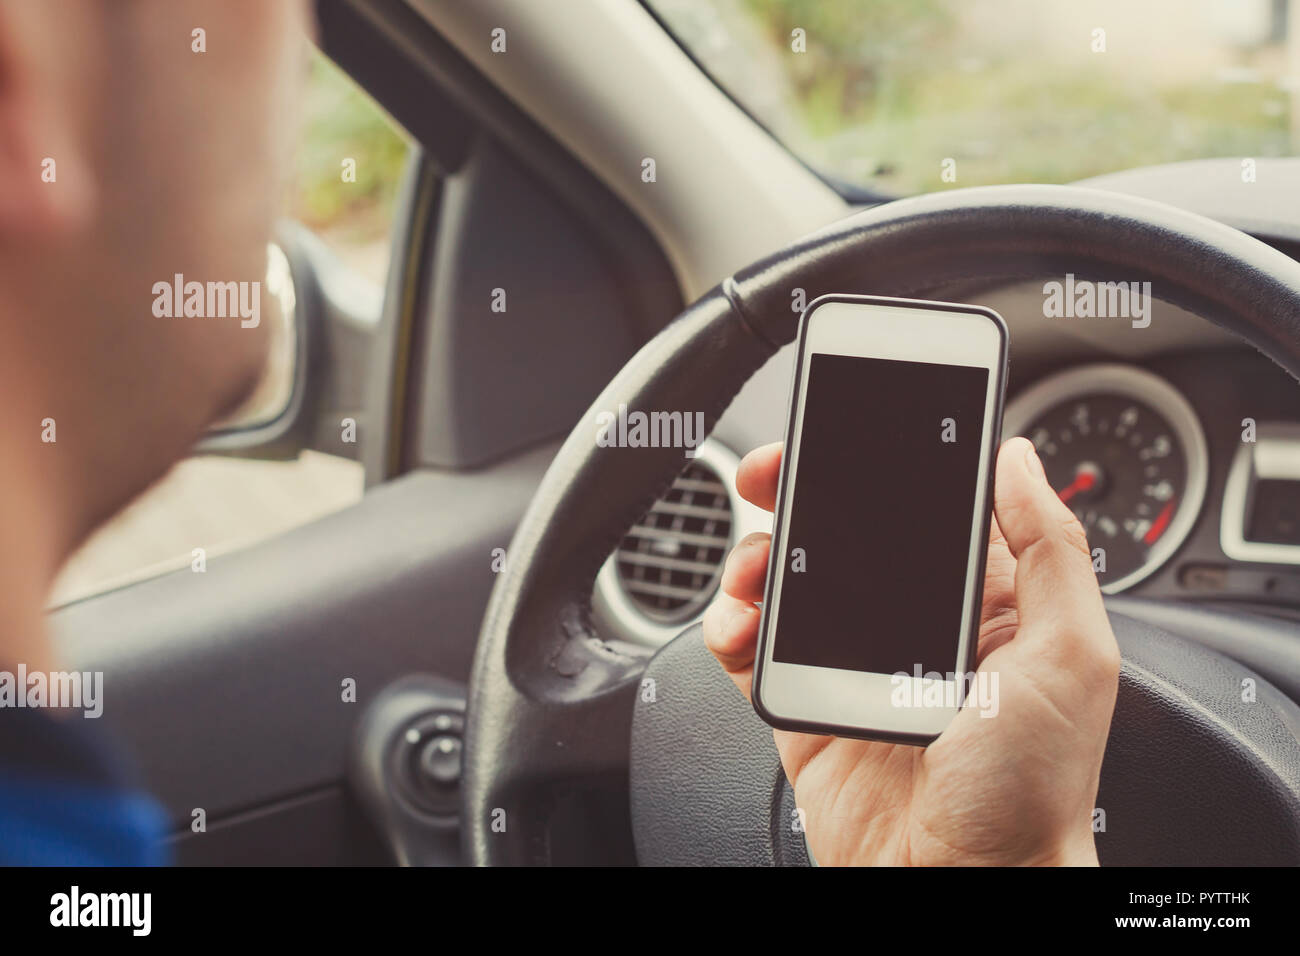 Hombre utilizando el smartphone en el coche, conductor titular del teléfono móvil con pantalla en blanco vacío. Foto de stock